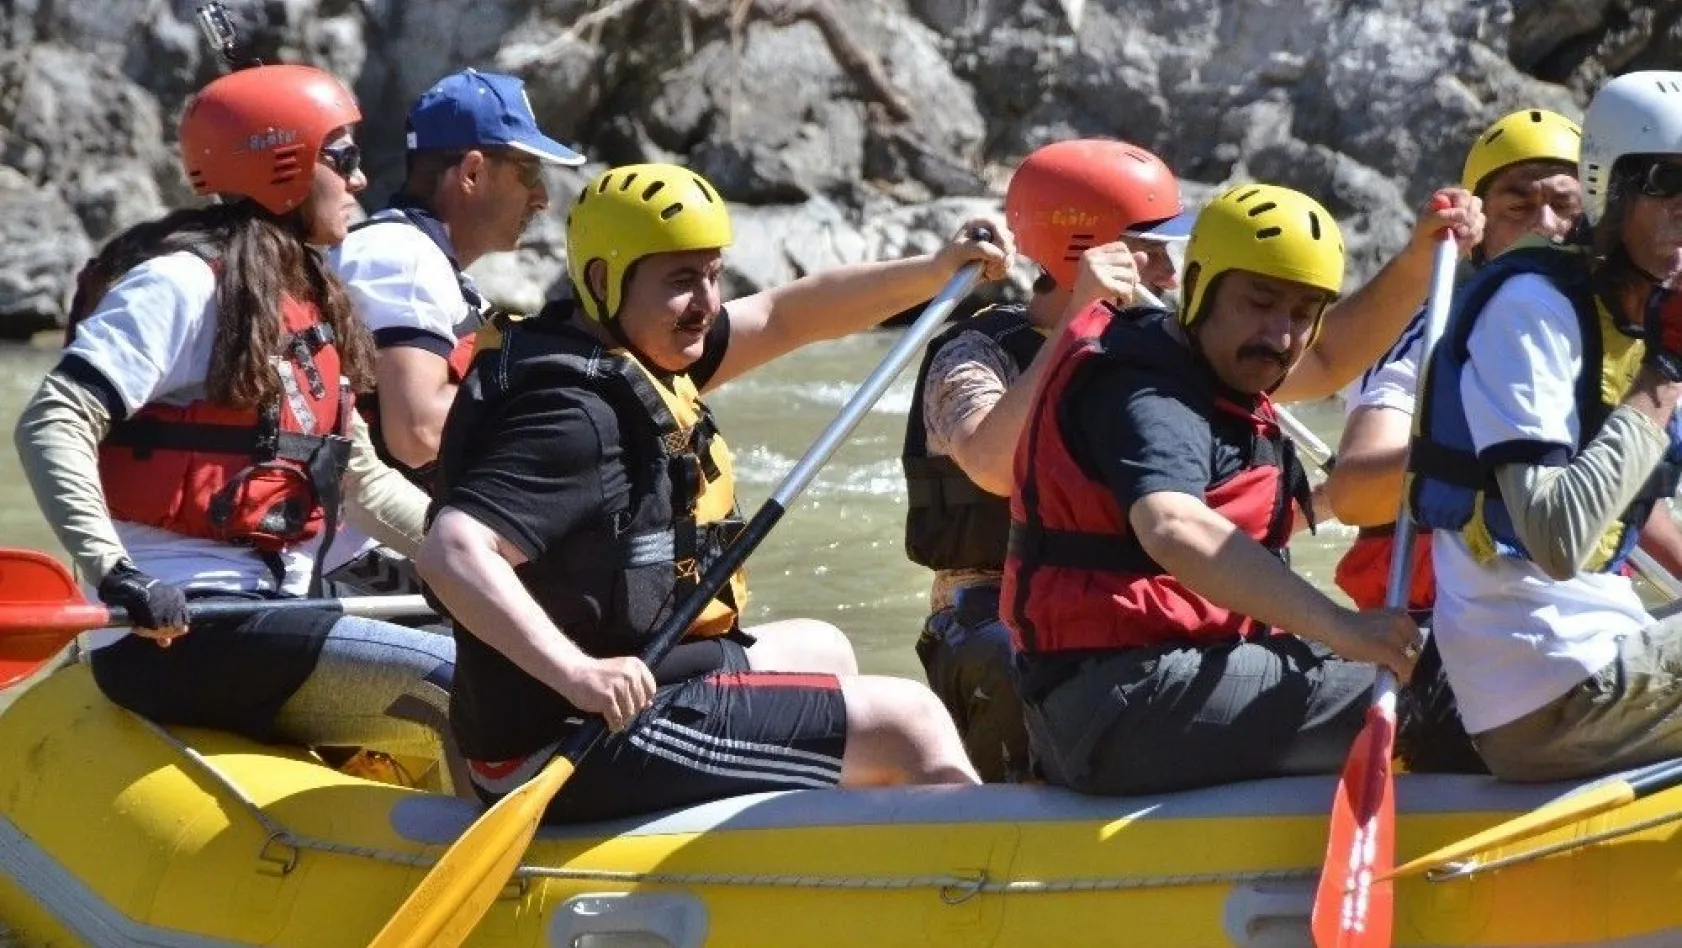 Erzincan Valisi Ali Arslantaş rafting yaptı
